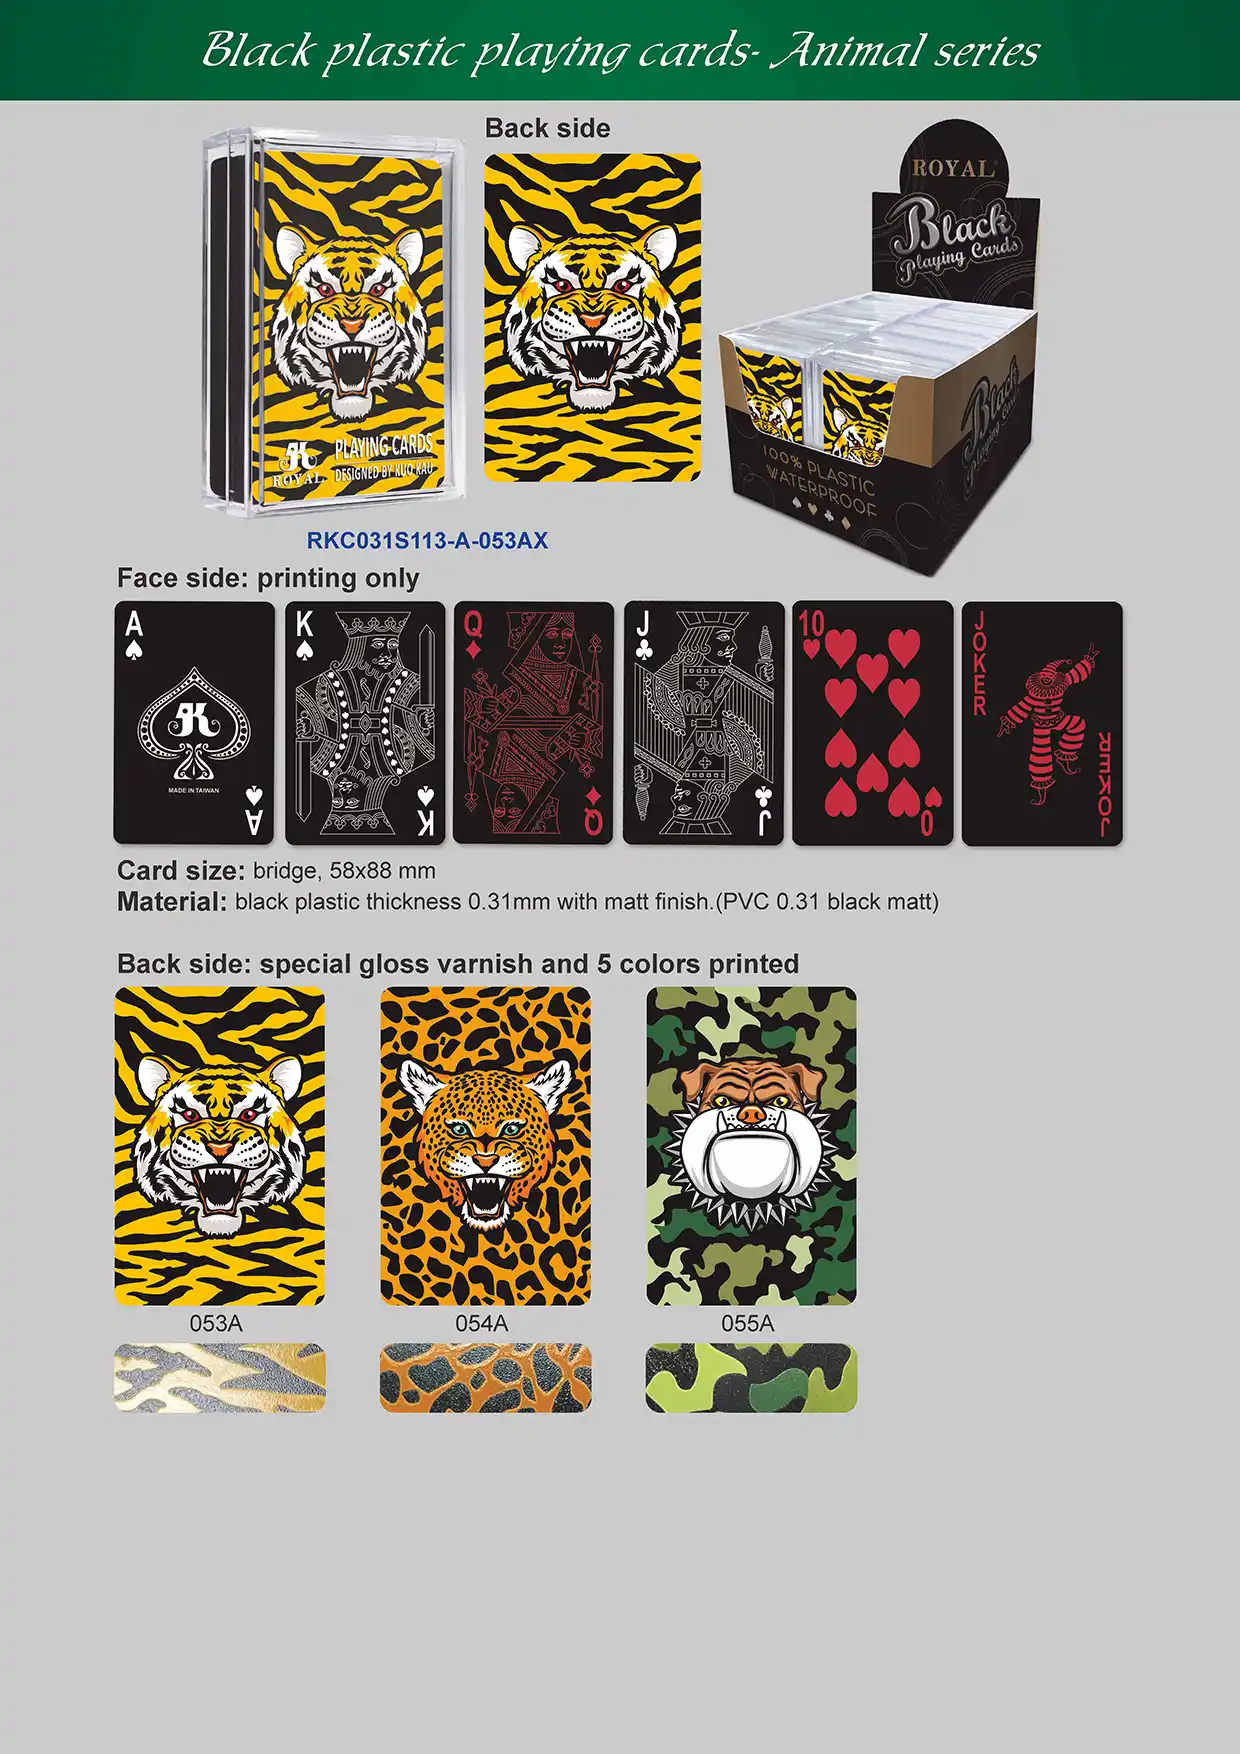 블랙 플레잉 카드 - 동물 시리즈(부분 특수 광택 바니시 포함)